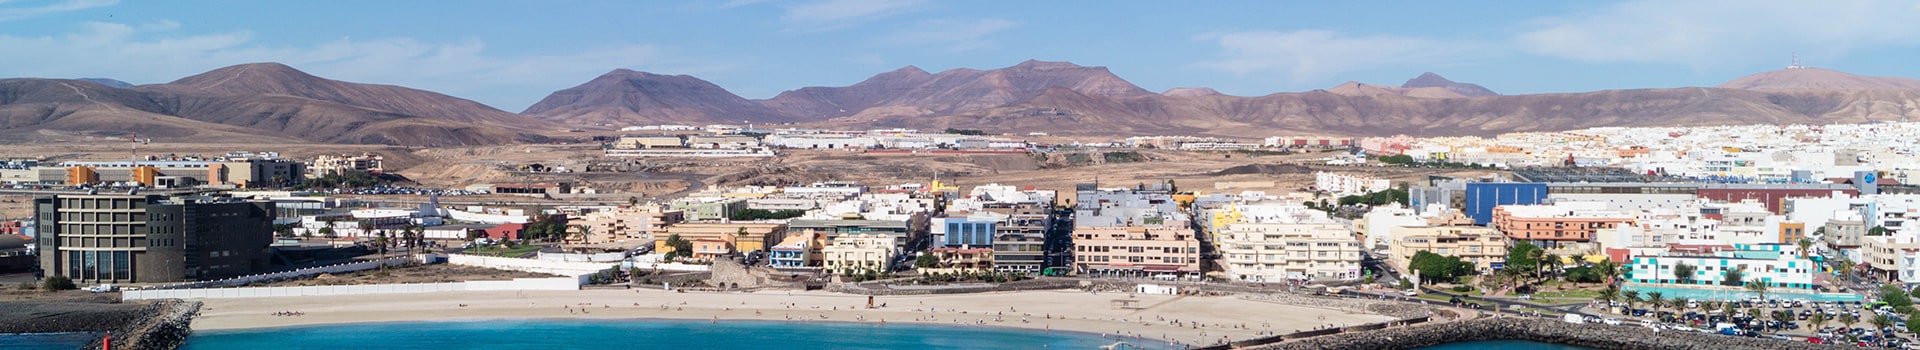 Santa Cruz de la Palma - Fuerteventura